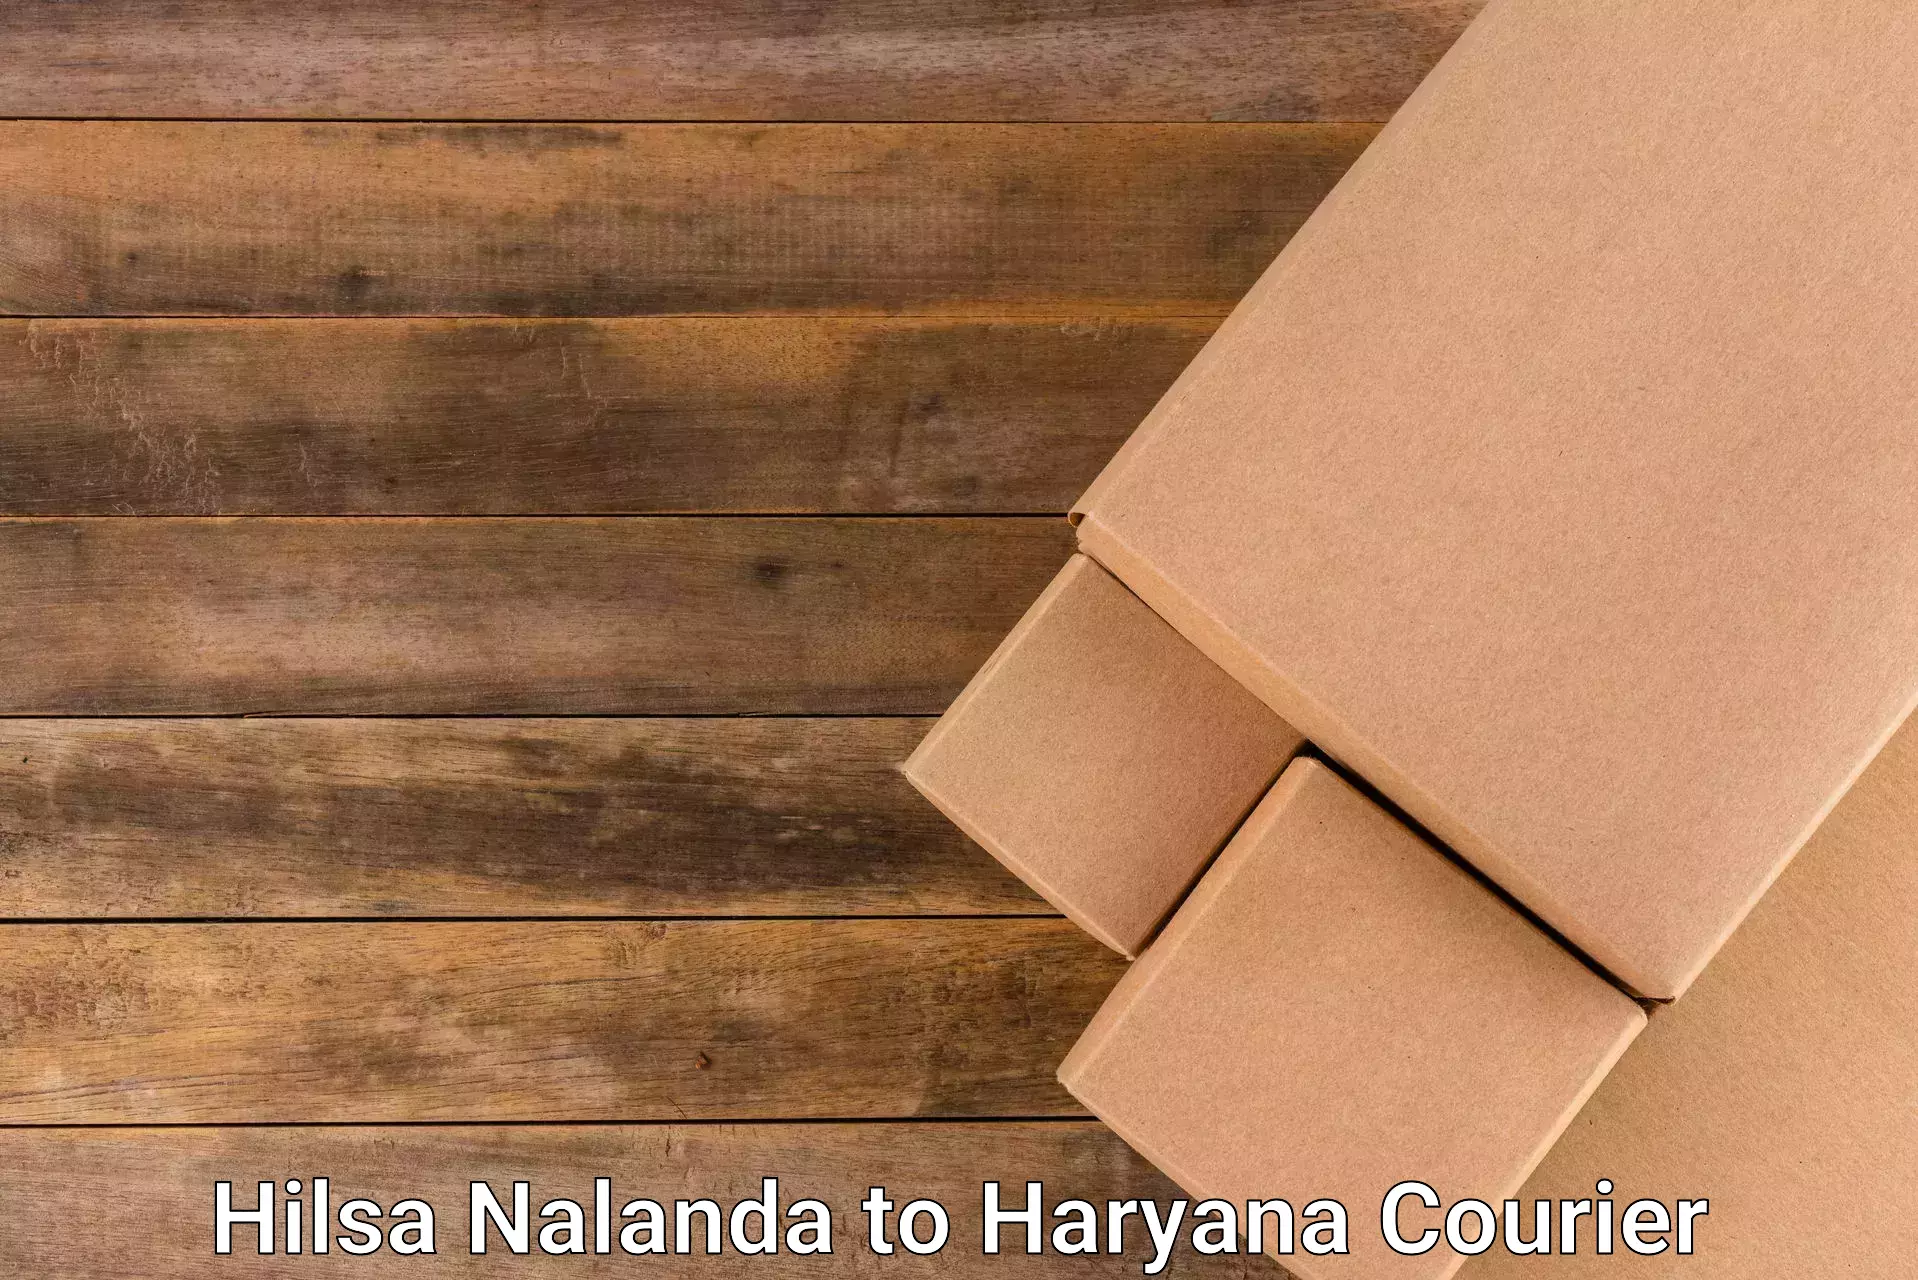 Budget-friendly shipping Hilsa Nalanda to Chaudhary Charan Singh Haryana Agricultural University Hisar